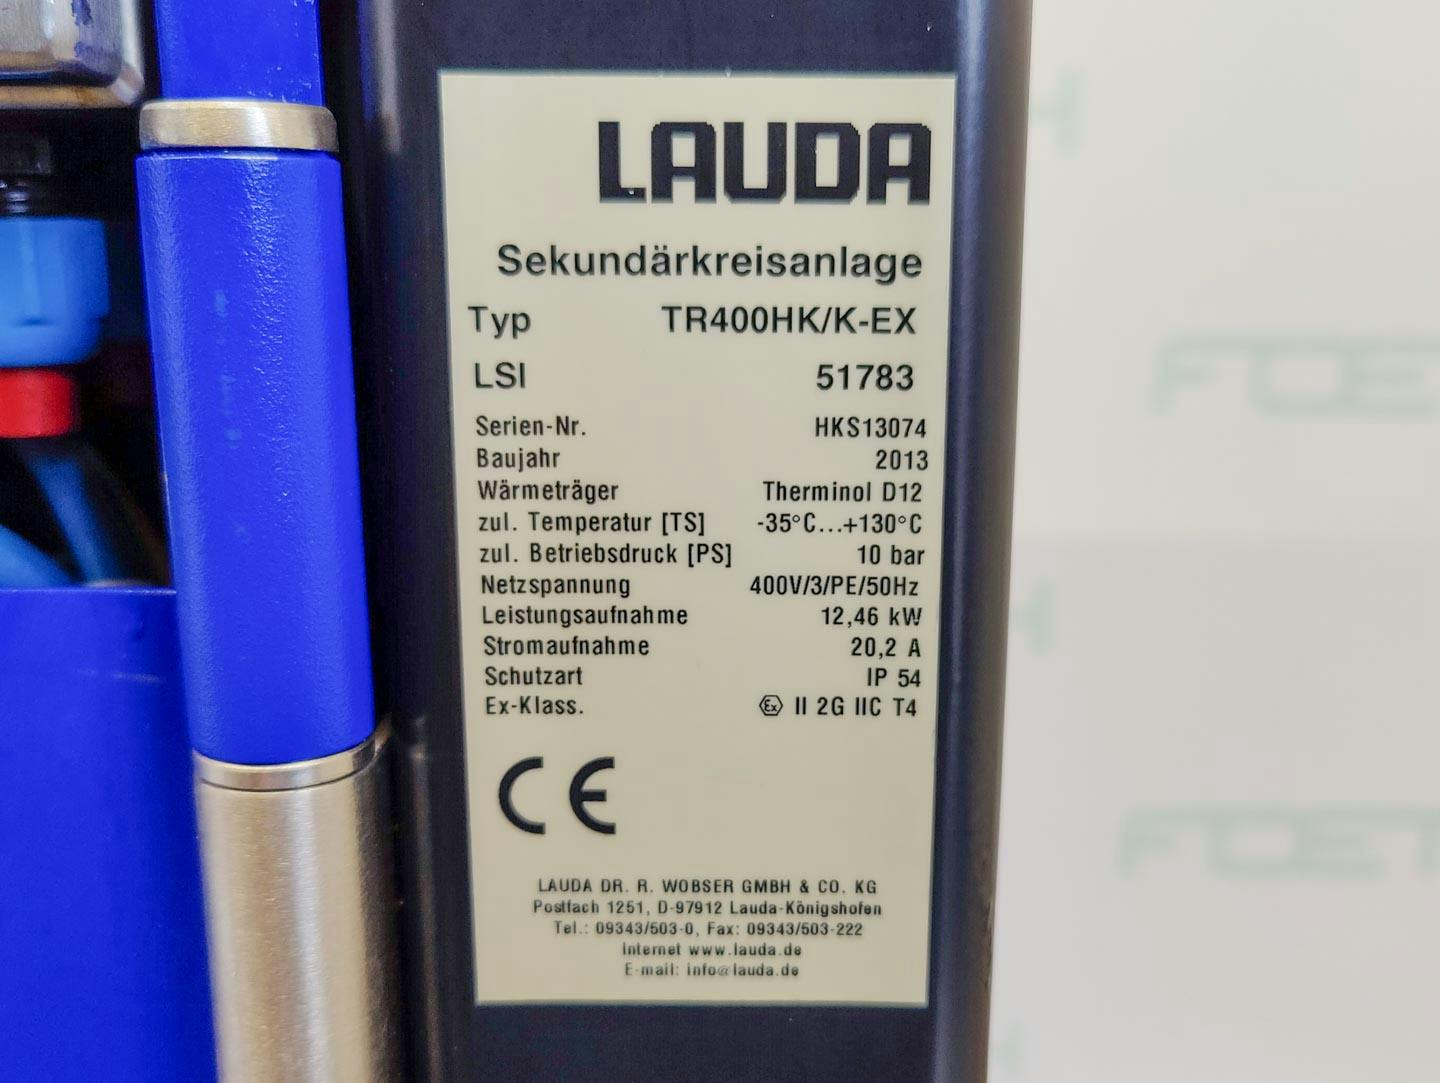 Lauda TR400 HK/KT-EX "secondary circuit system" - Unidade de fluido térmico - image 16